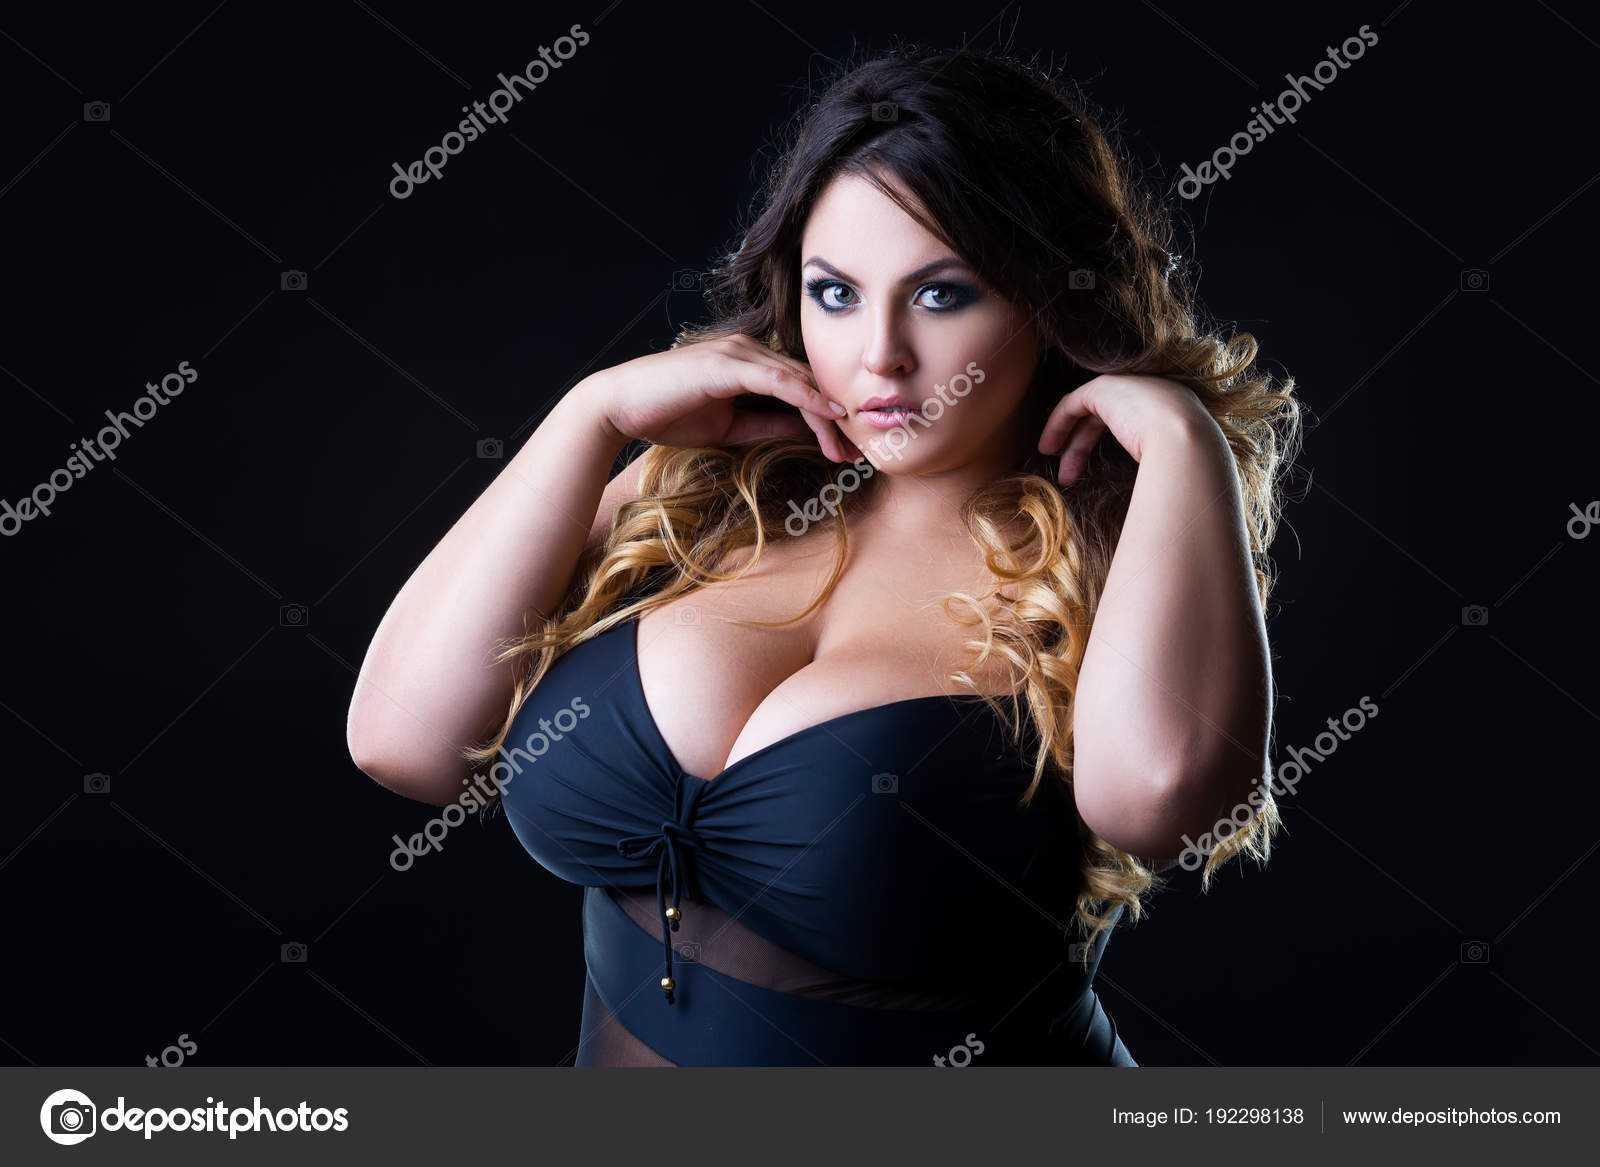 Big black breast woman